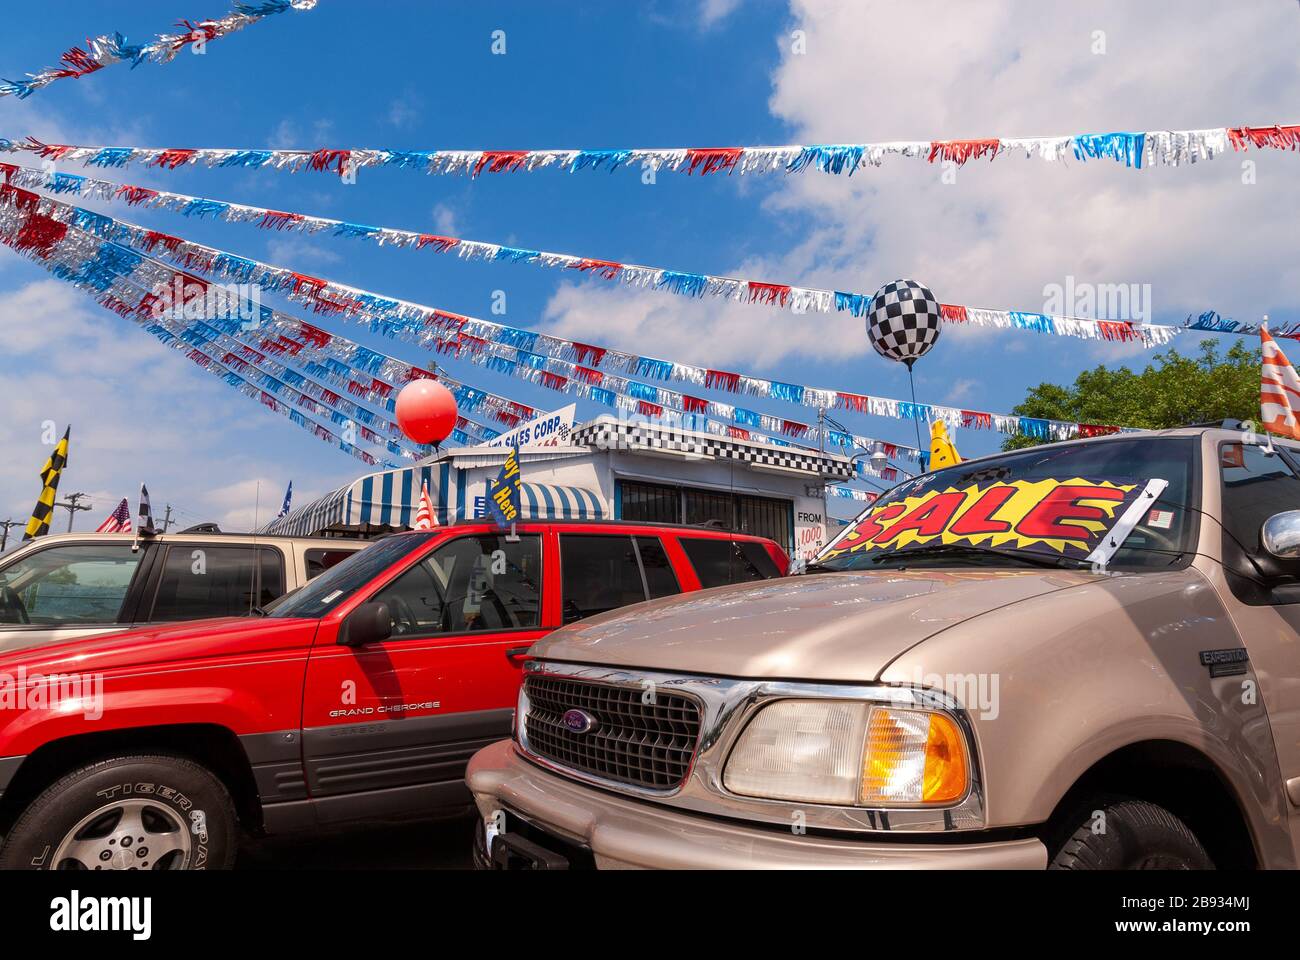 Gebrauchtwagen zum Verkauf auf Autohaus Vorplatz, Miami, Florida, USA  Stockfotografie - Alamy